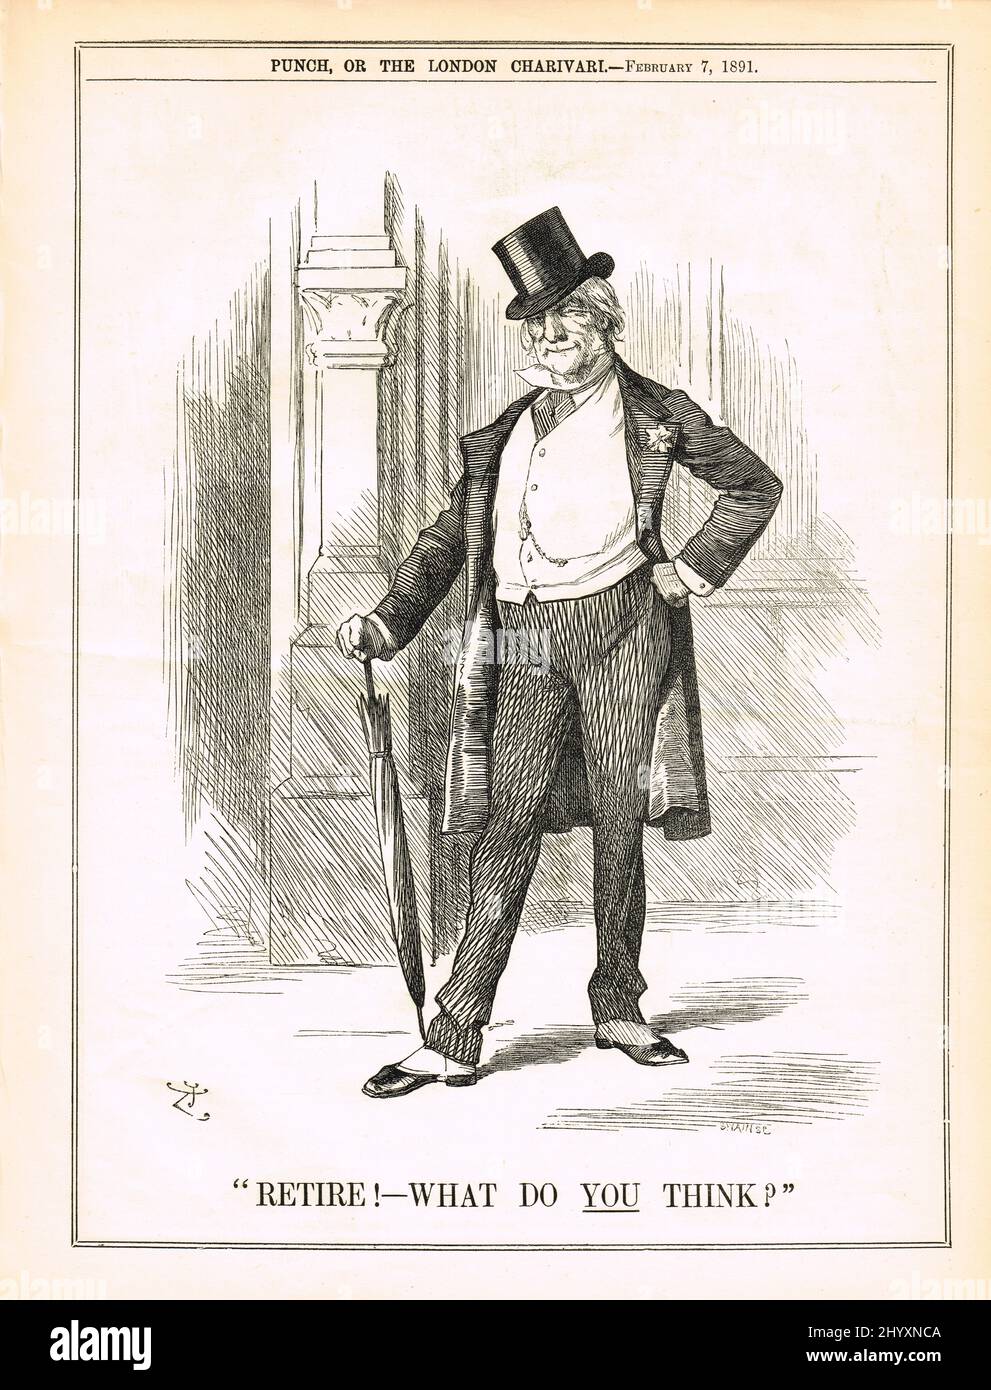 Prenez votre retraite ! Qu’en pensez-vous ? Punch caricature de 1891 concernant les rumeurs William Gladstone devait démissionner Banque D'Images